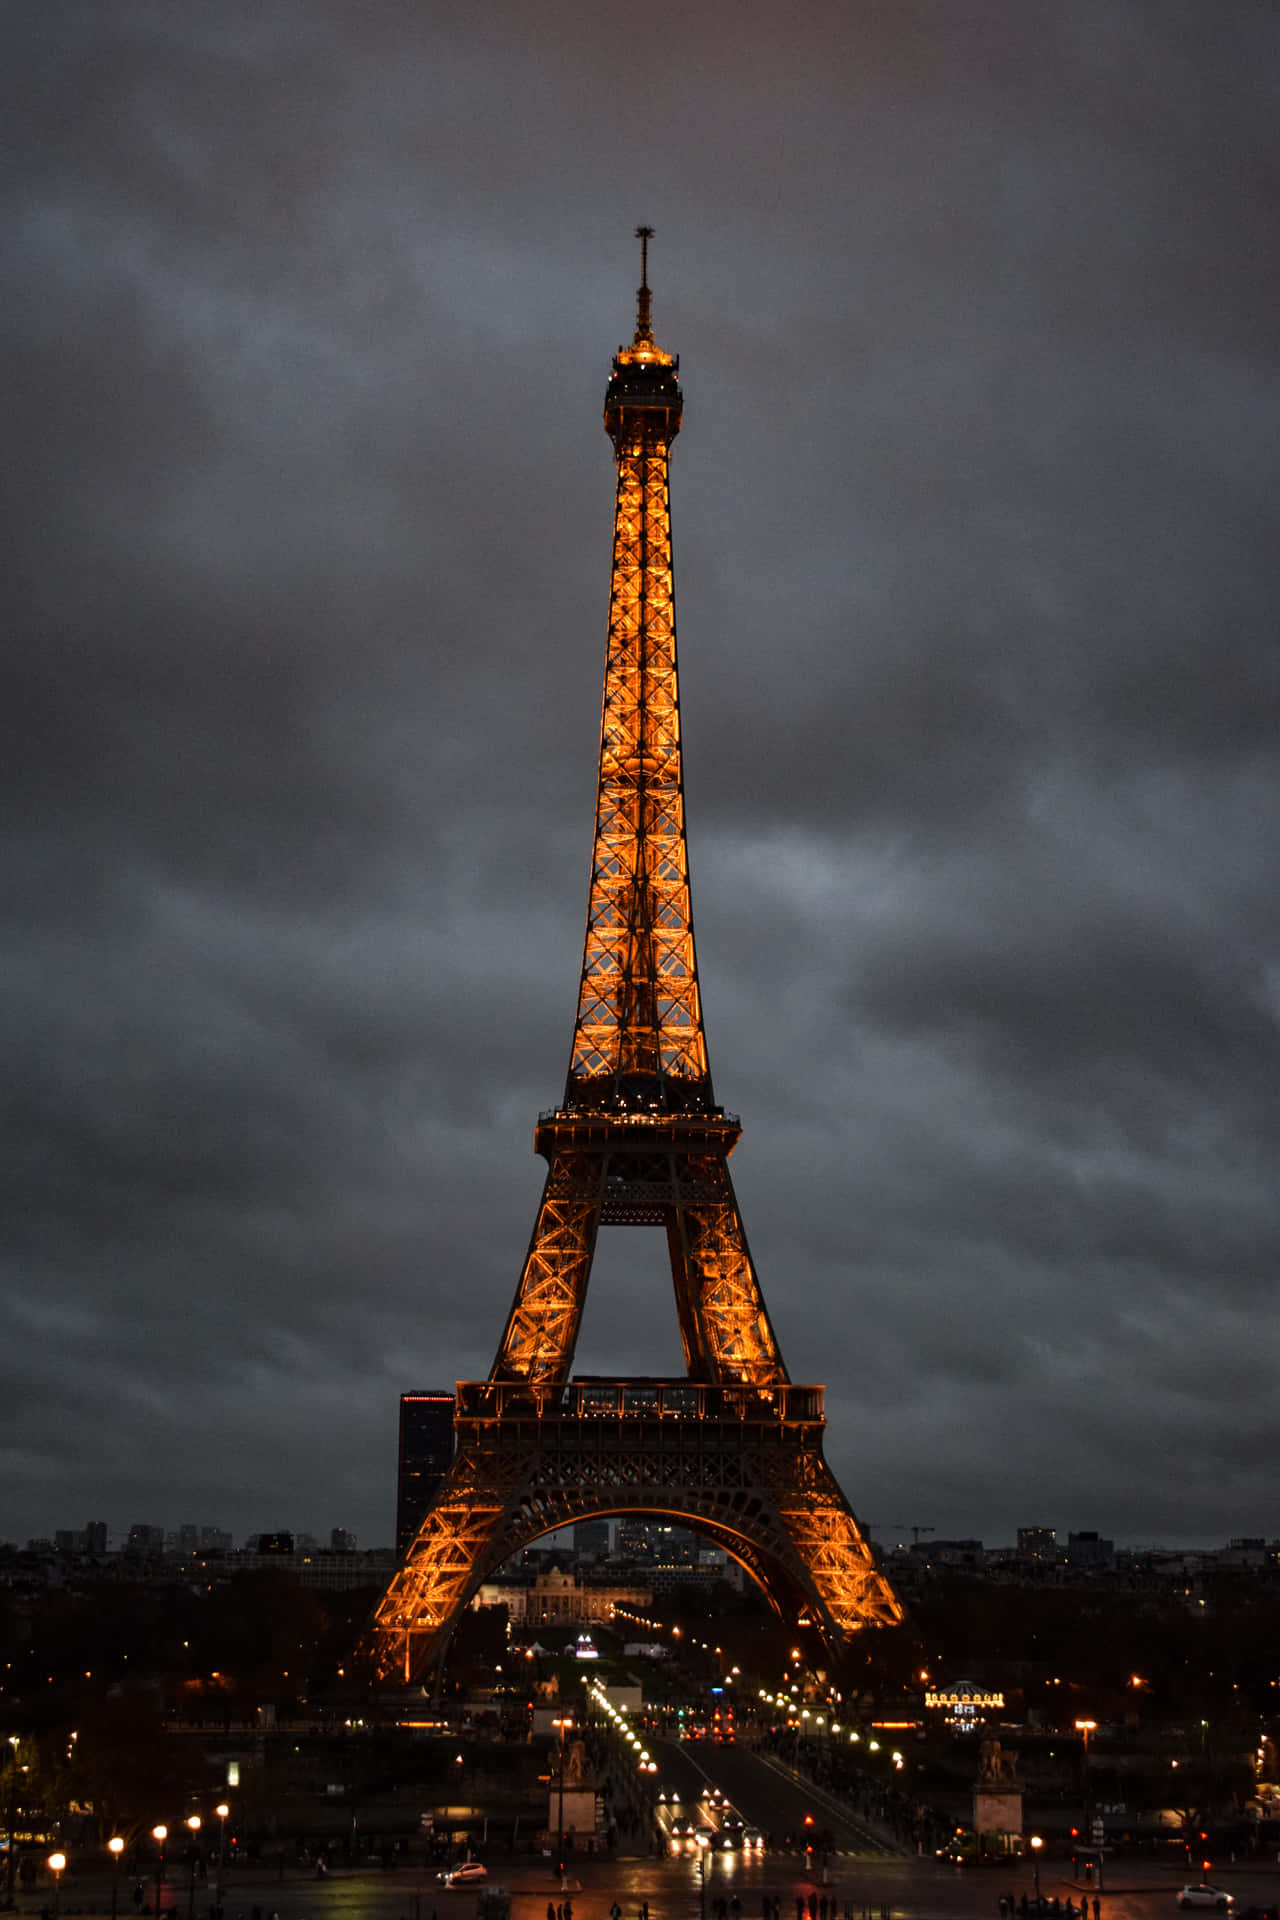 Vyöver Eiffeltornet Upplyst På Natten I Paris. Wallpaper